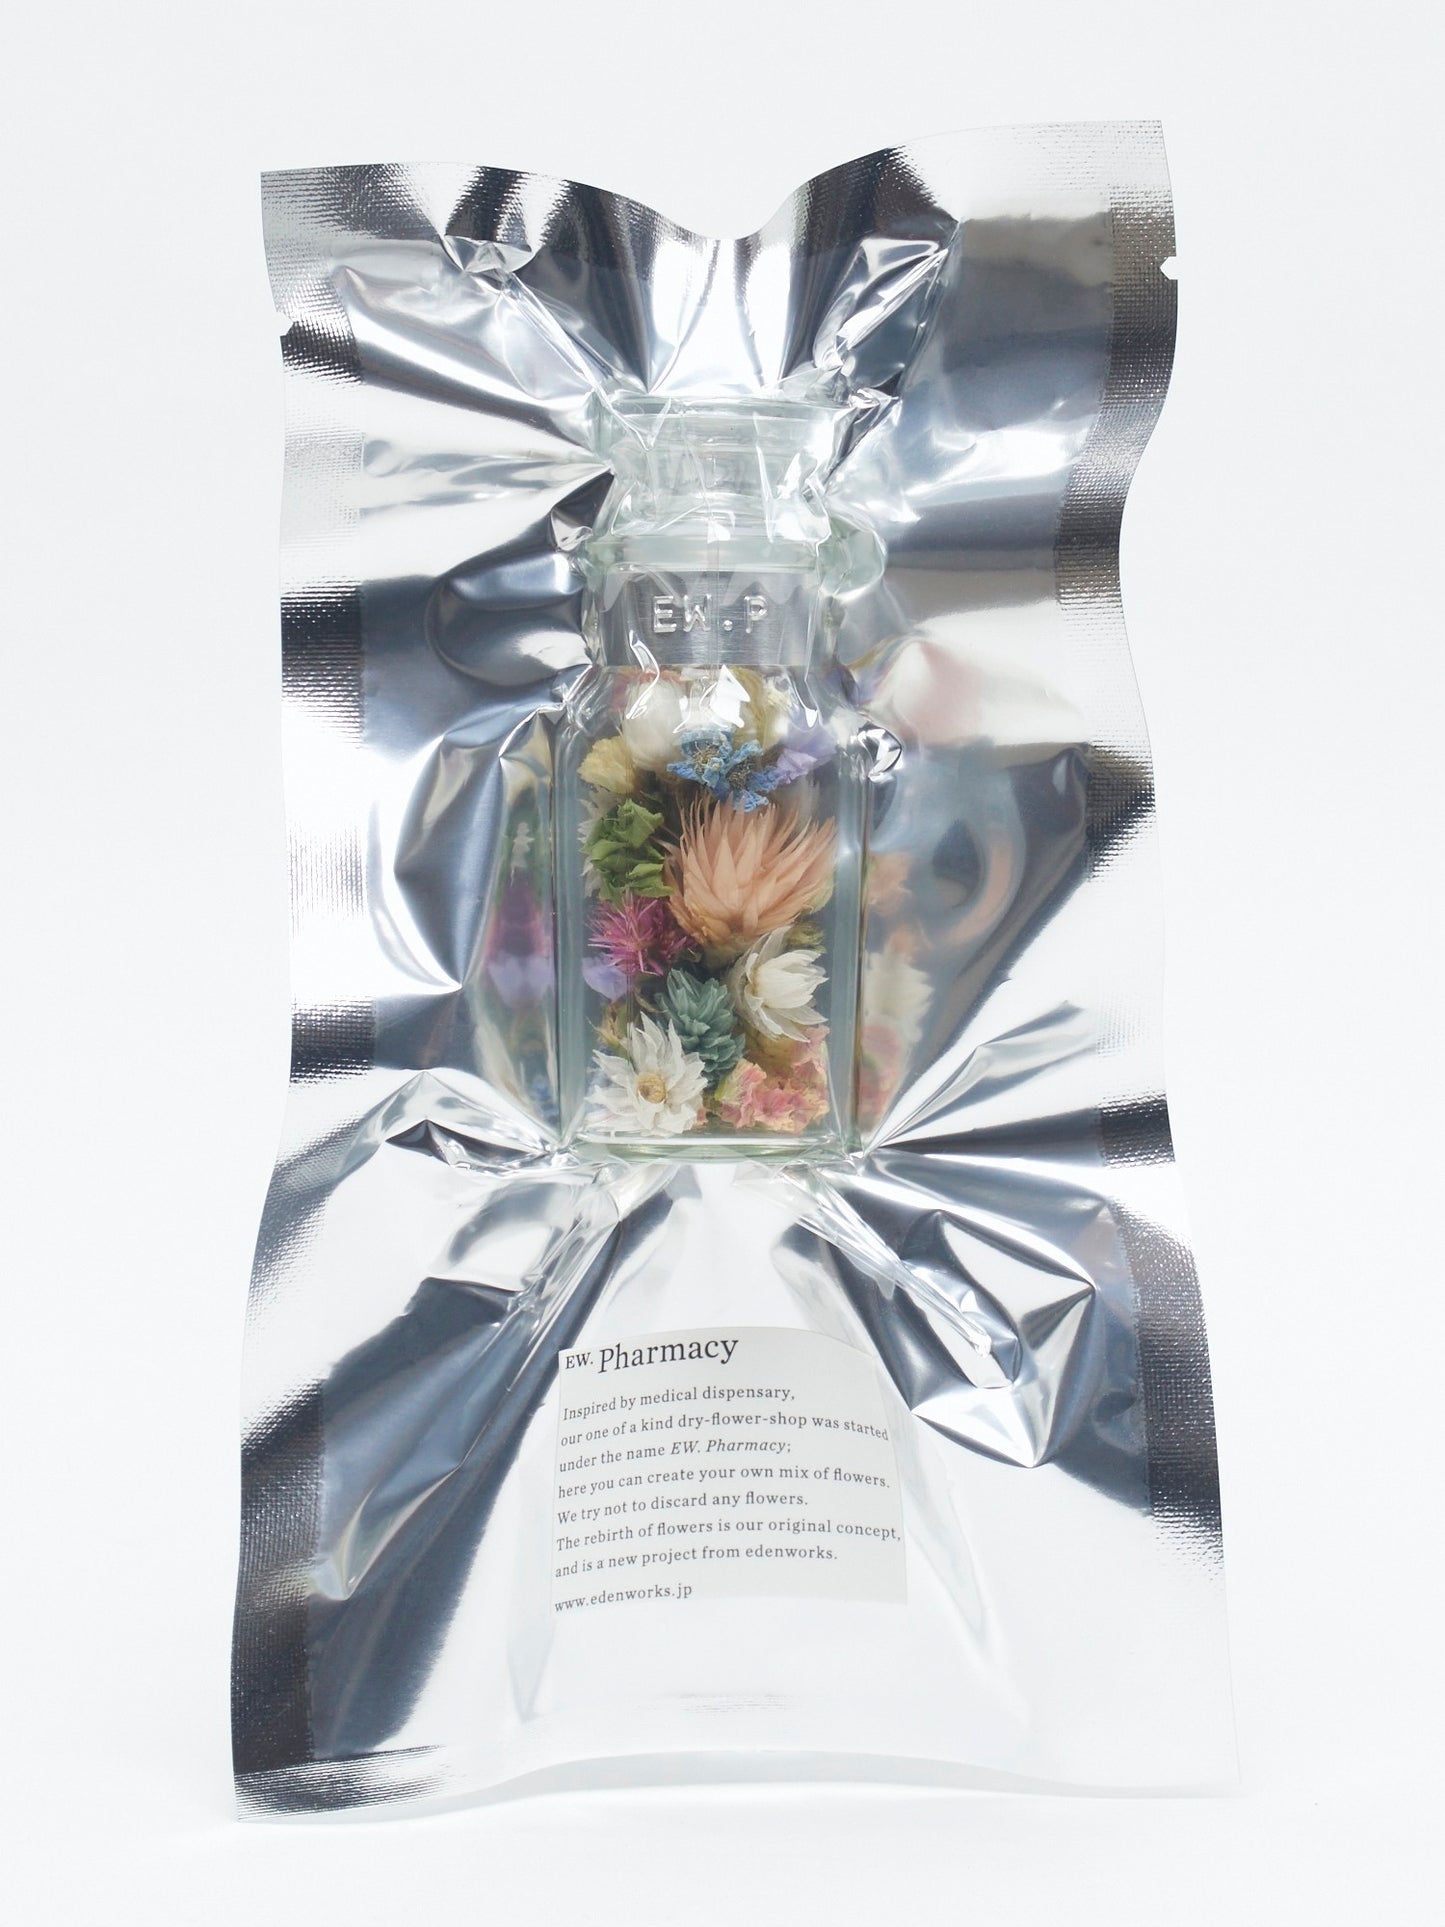 Flower language mini bottle "rhodanthe"